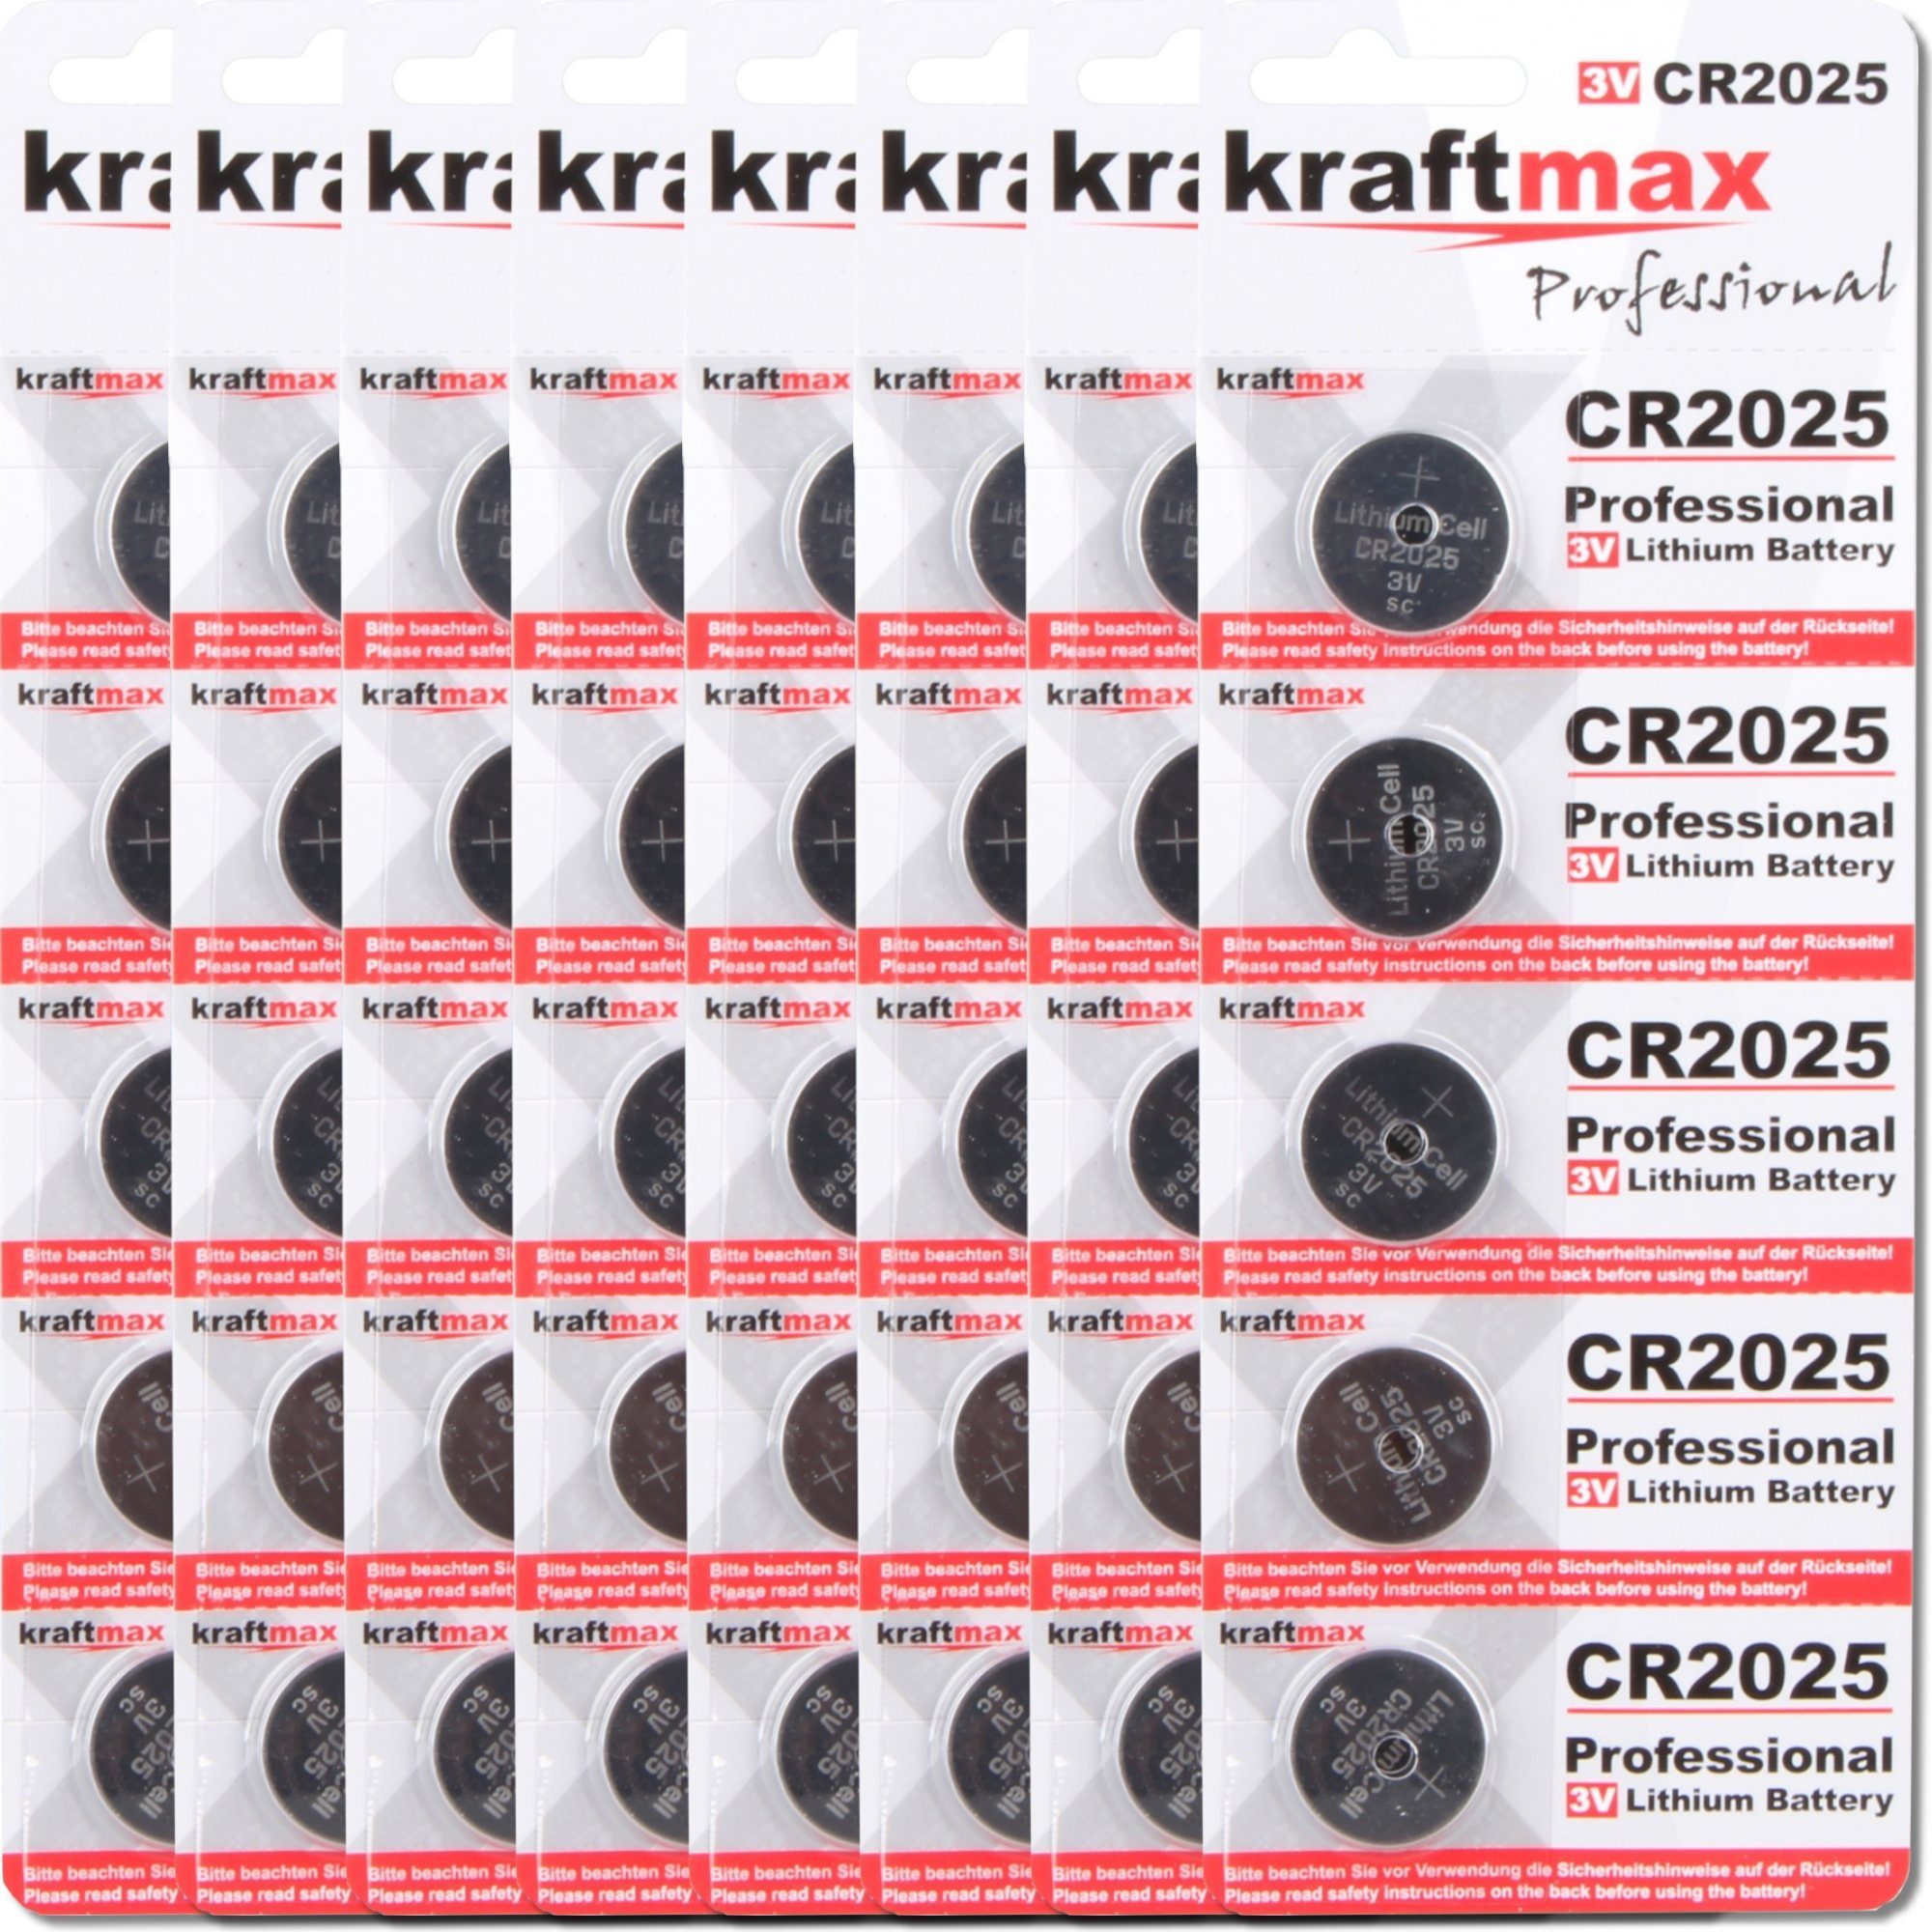 kraftmax 40er Pack CR2025 Lithium Hochleistungs- Batterie / 3V Knopfzelle Batterie, (1 St)